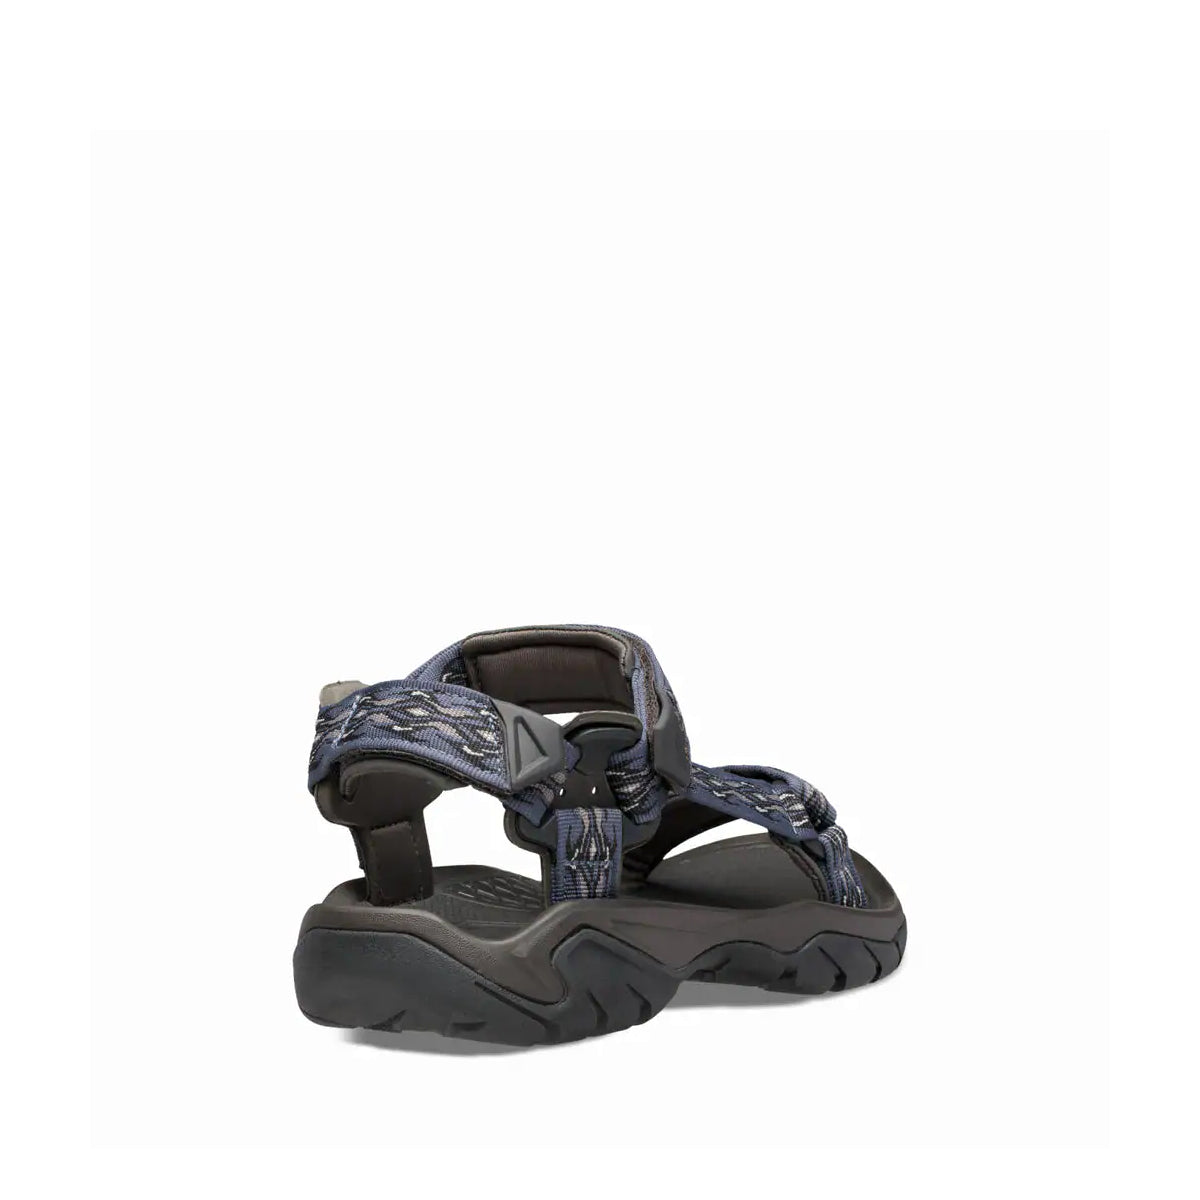 M Terra Fi 5 Universal - shoe&amp;me - Teva - Sandal - Mens, Sandal